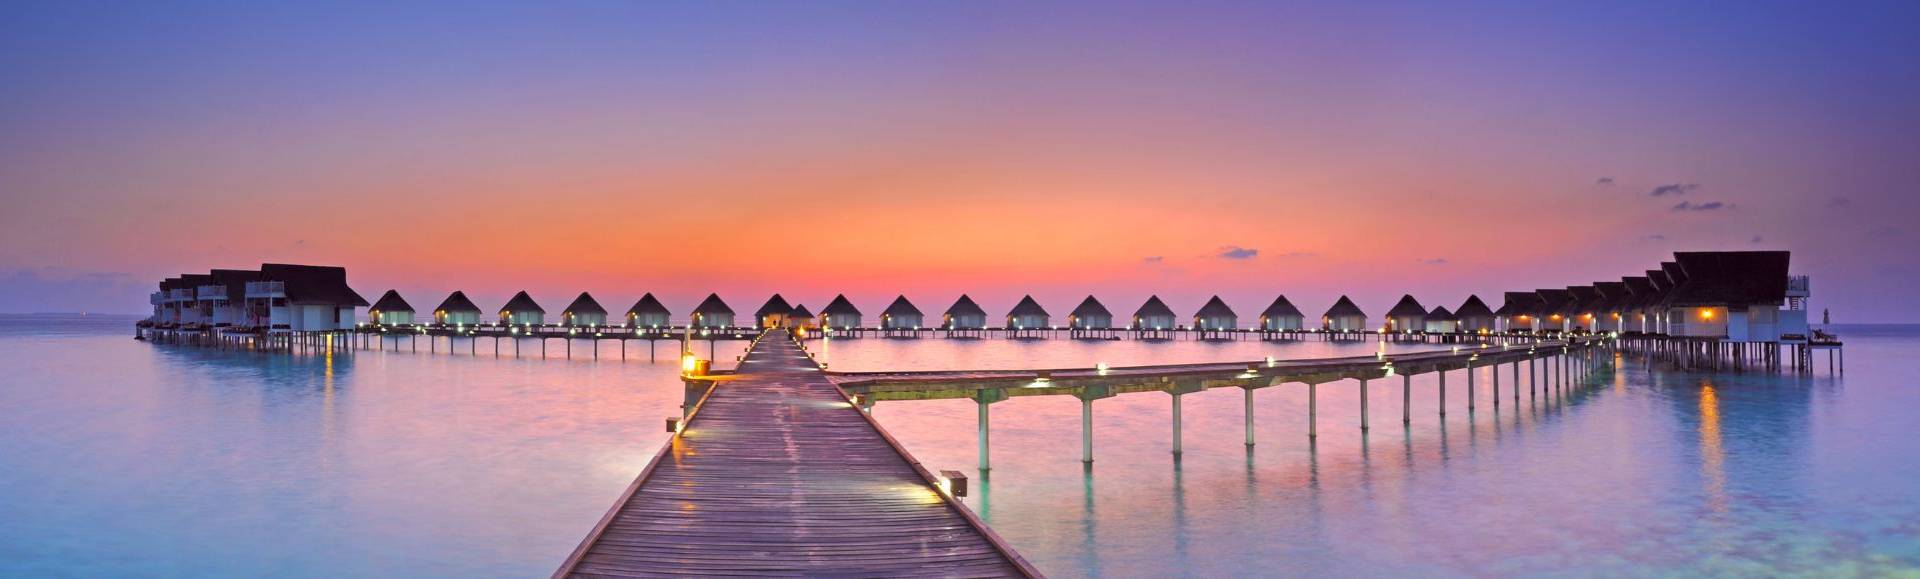 maldives sunset  sea 